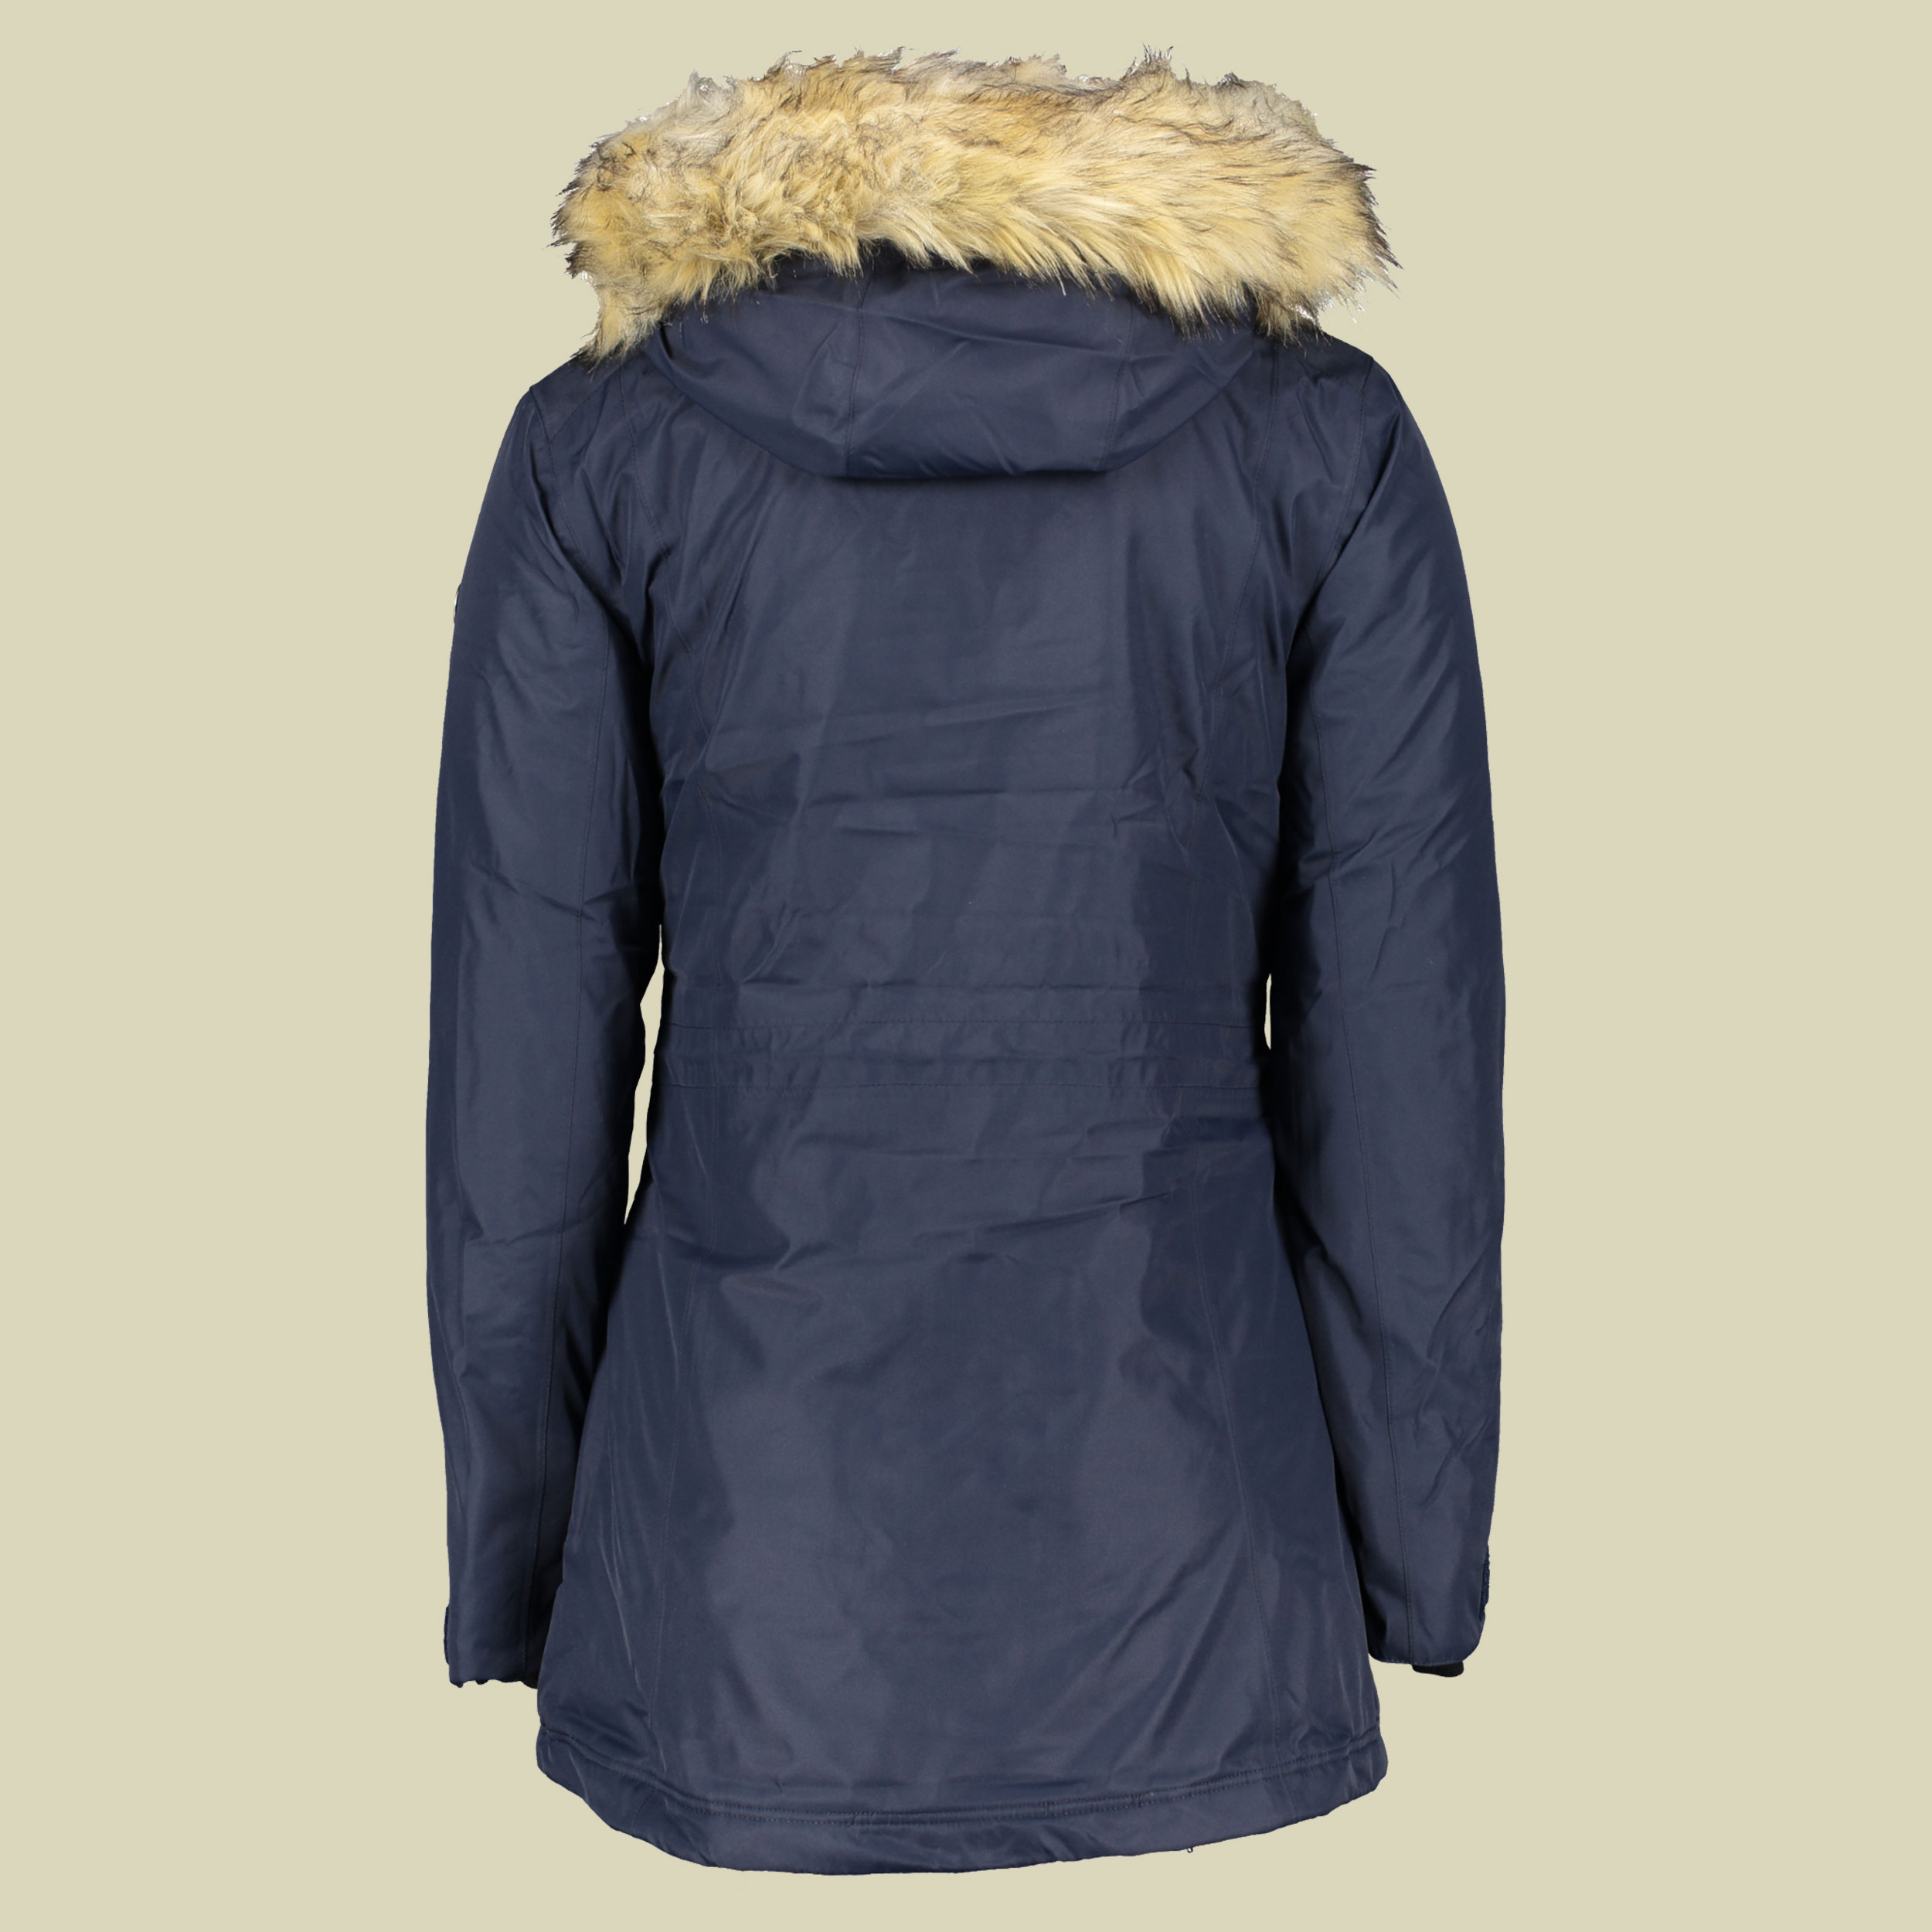 Hilde Jacket Women Größe 44 Farbe marine